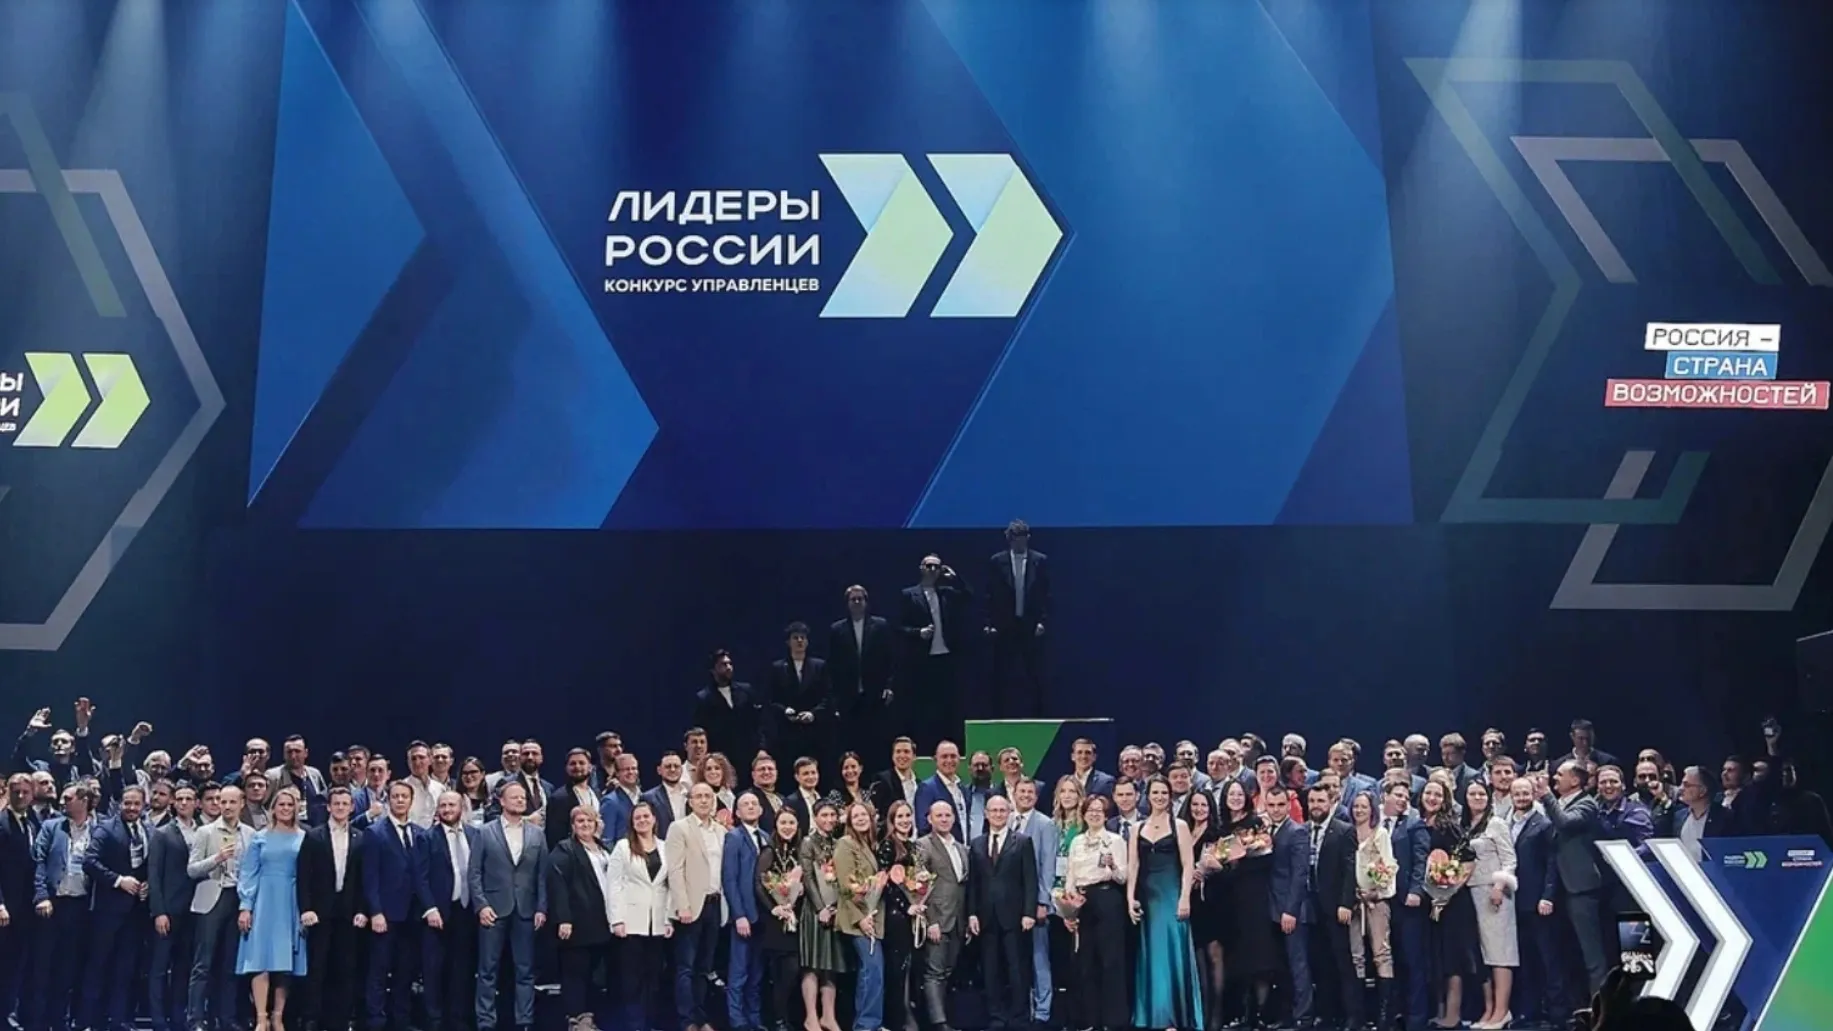 Церемония награждения победителей конкурса «Лидеры России» в Москве. Фото предоставлено пресс-службой конкурса